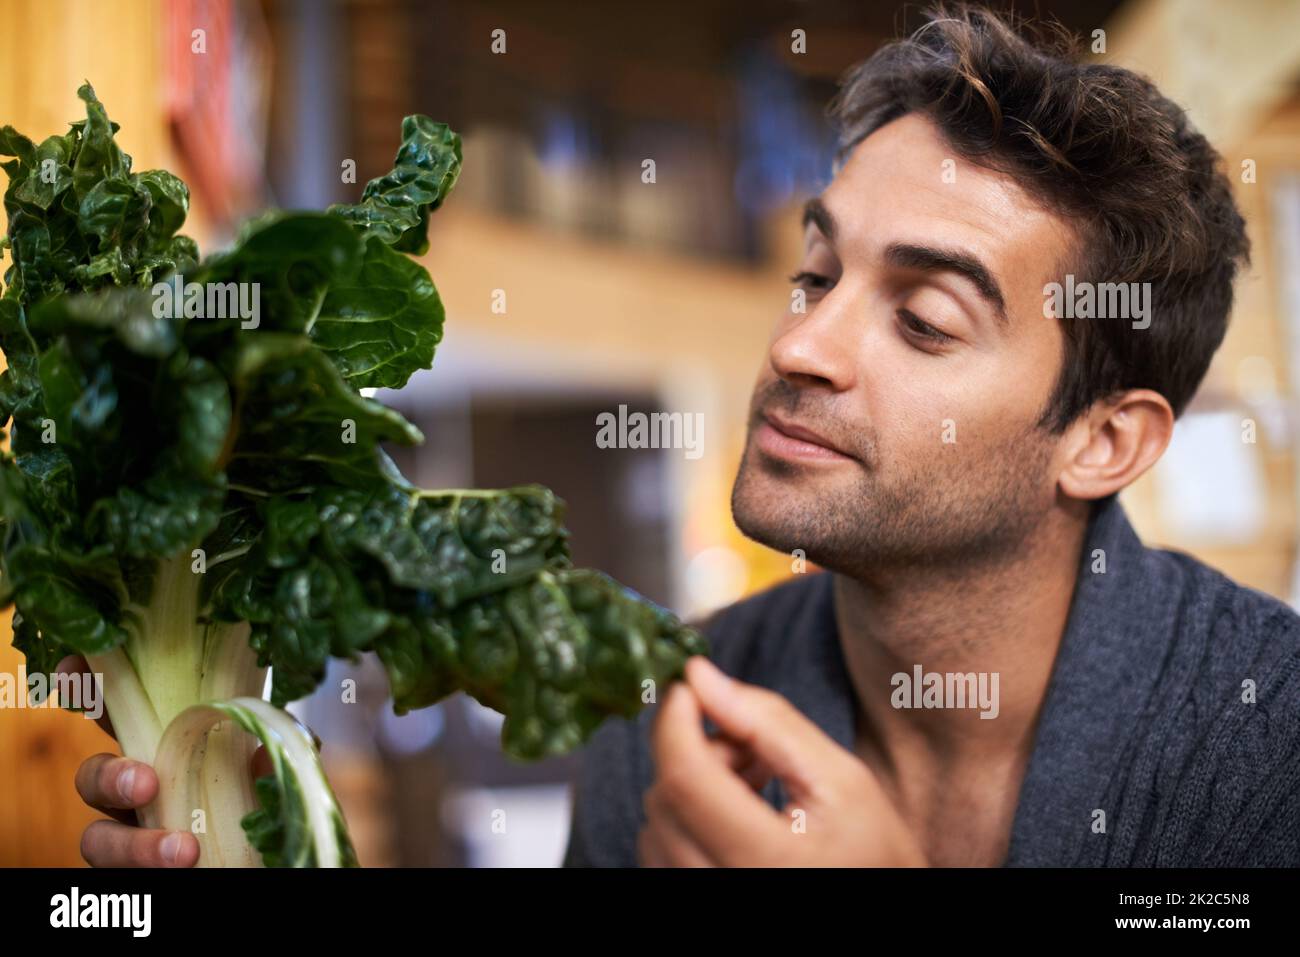 Ispezione del prodotto. Scatto di un giovane che sceglie quale spinaci comprare. Foto Stock